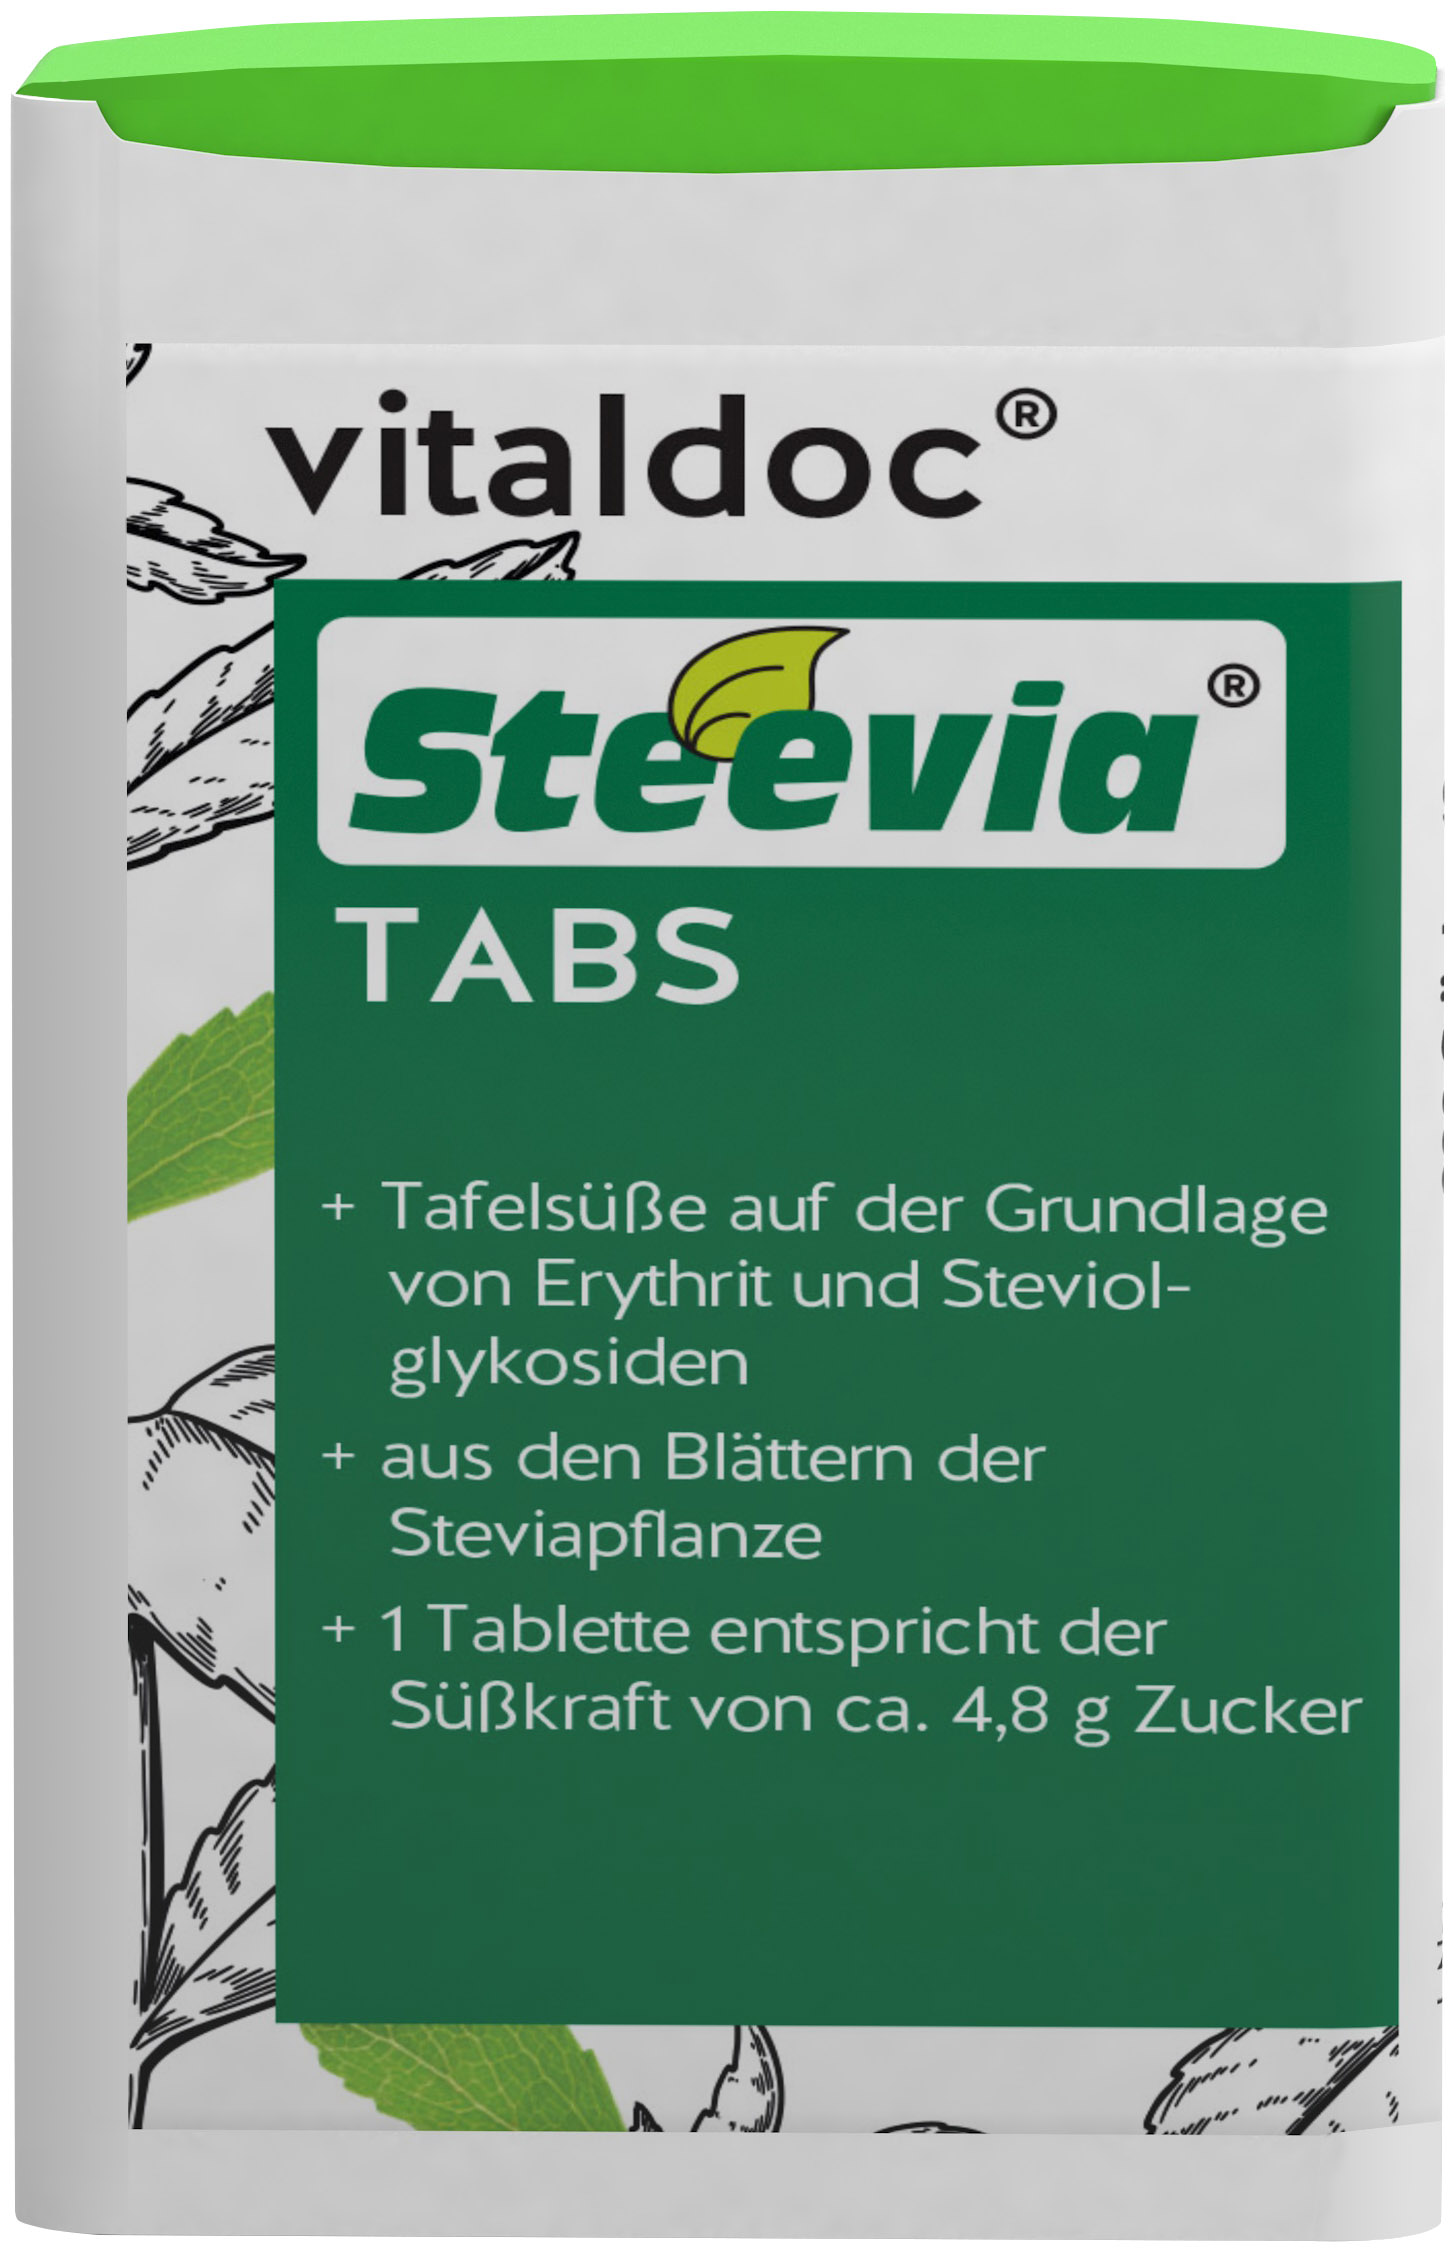 vitaldoc® Steevia® TABS Spenderbox